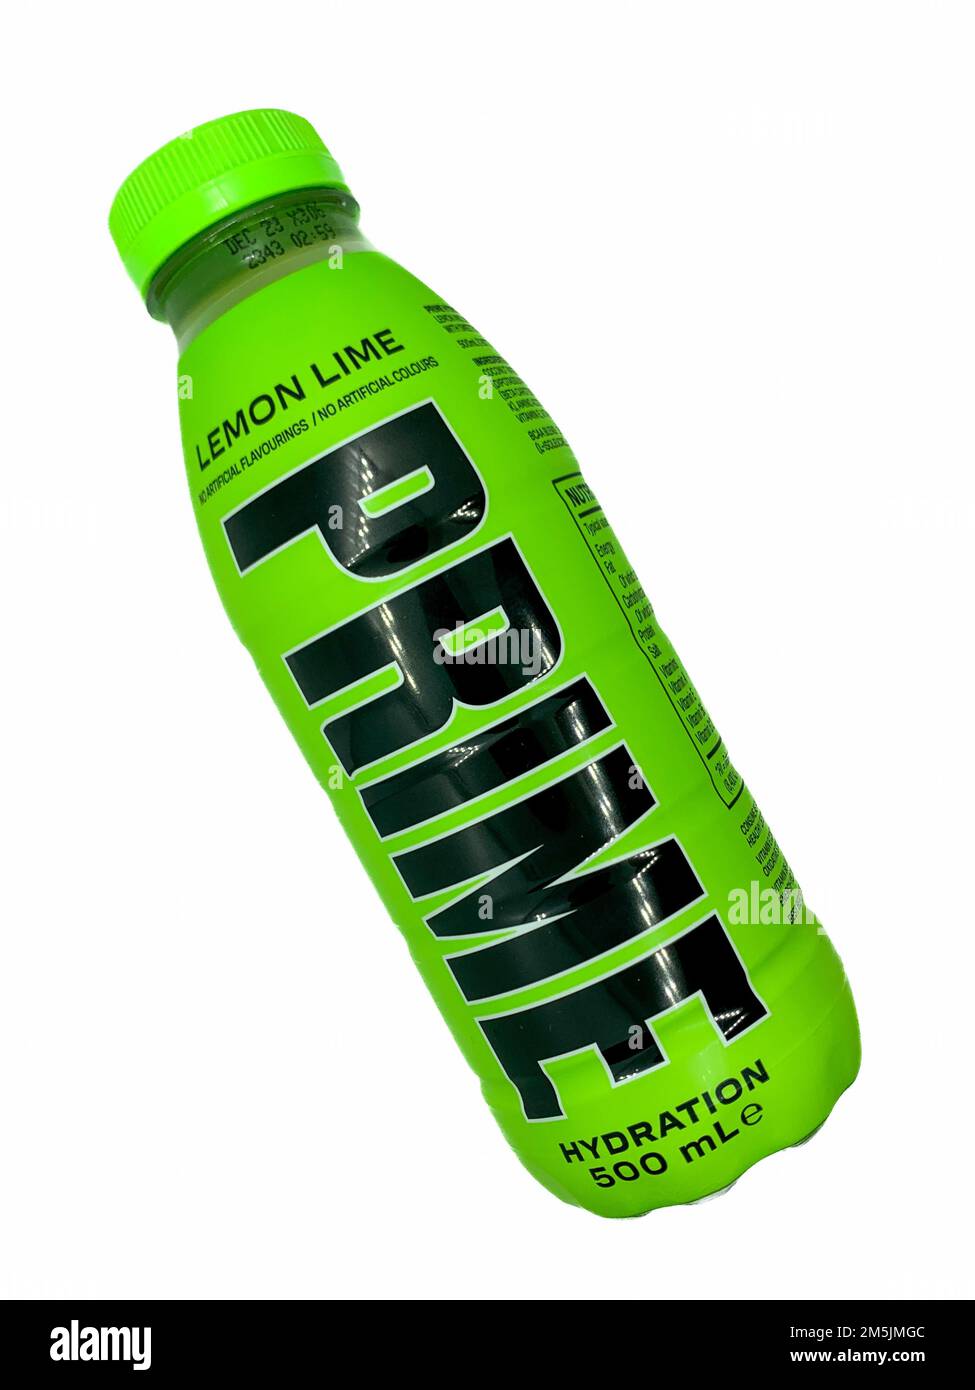 PRIME Hydration Drink By (LOGAN PAUL x KSI) - Single Bottle